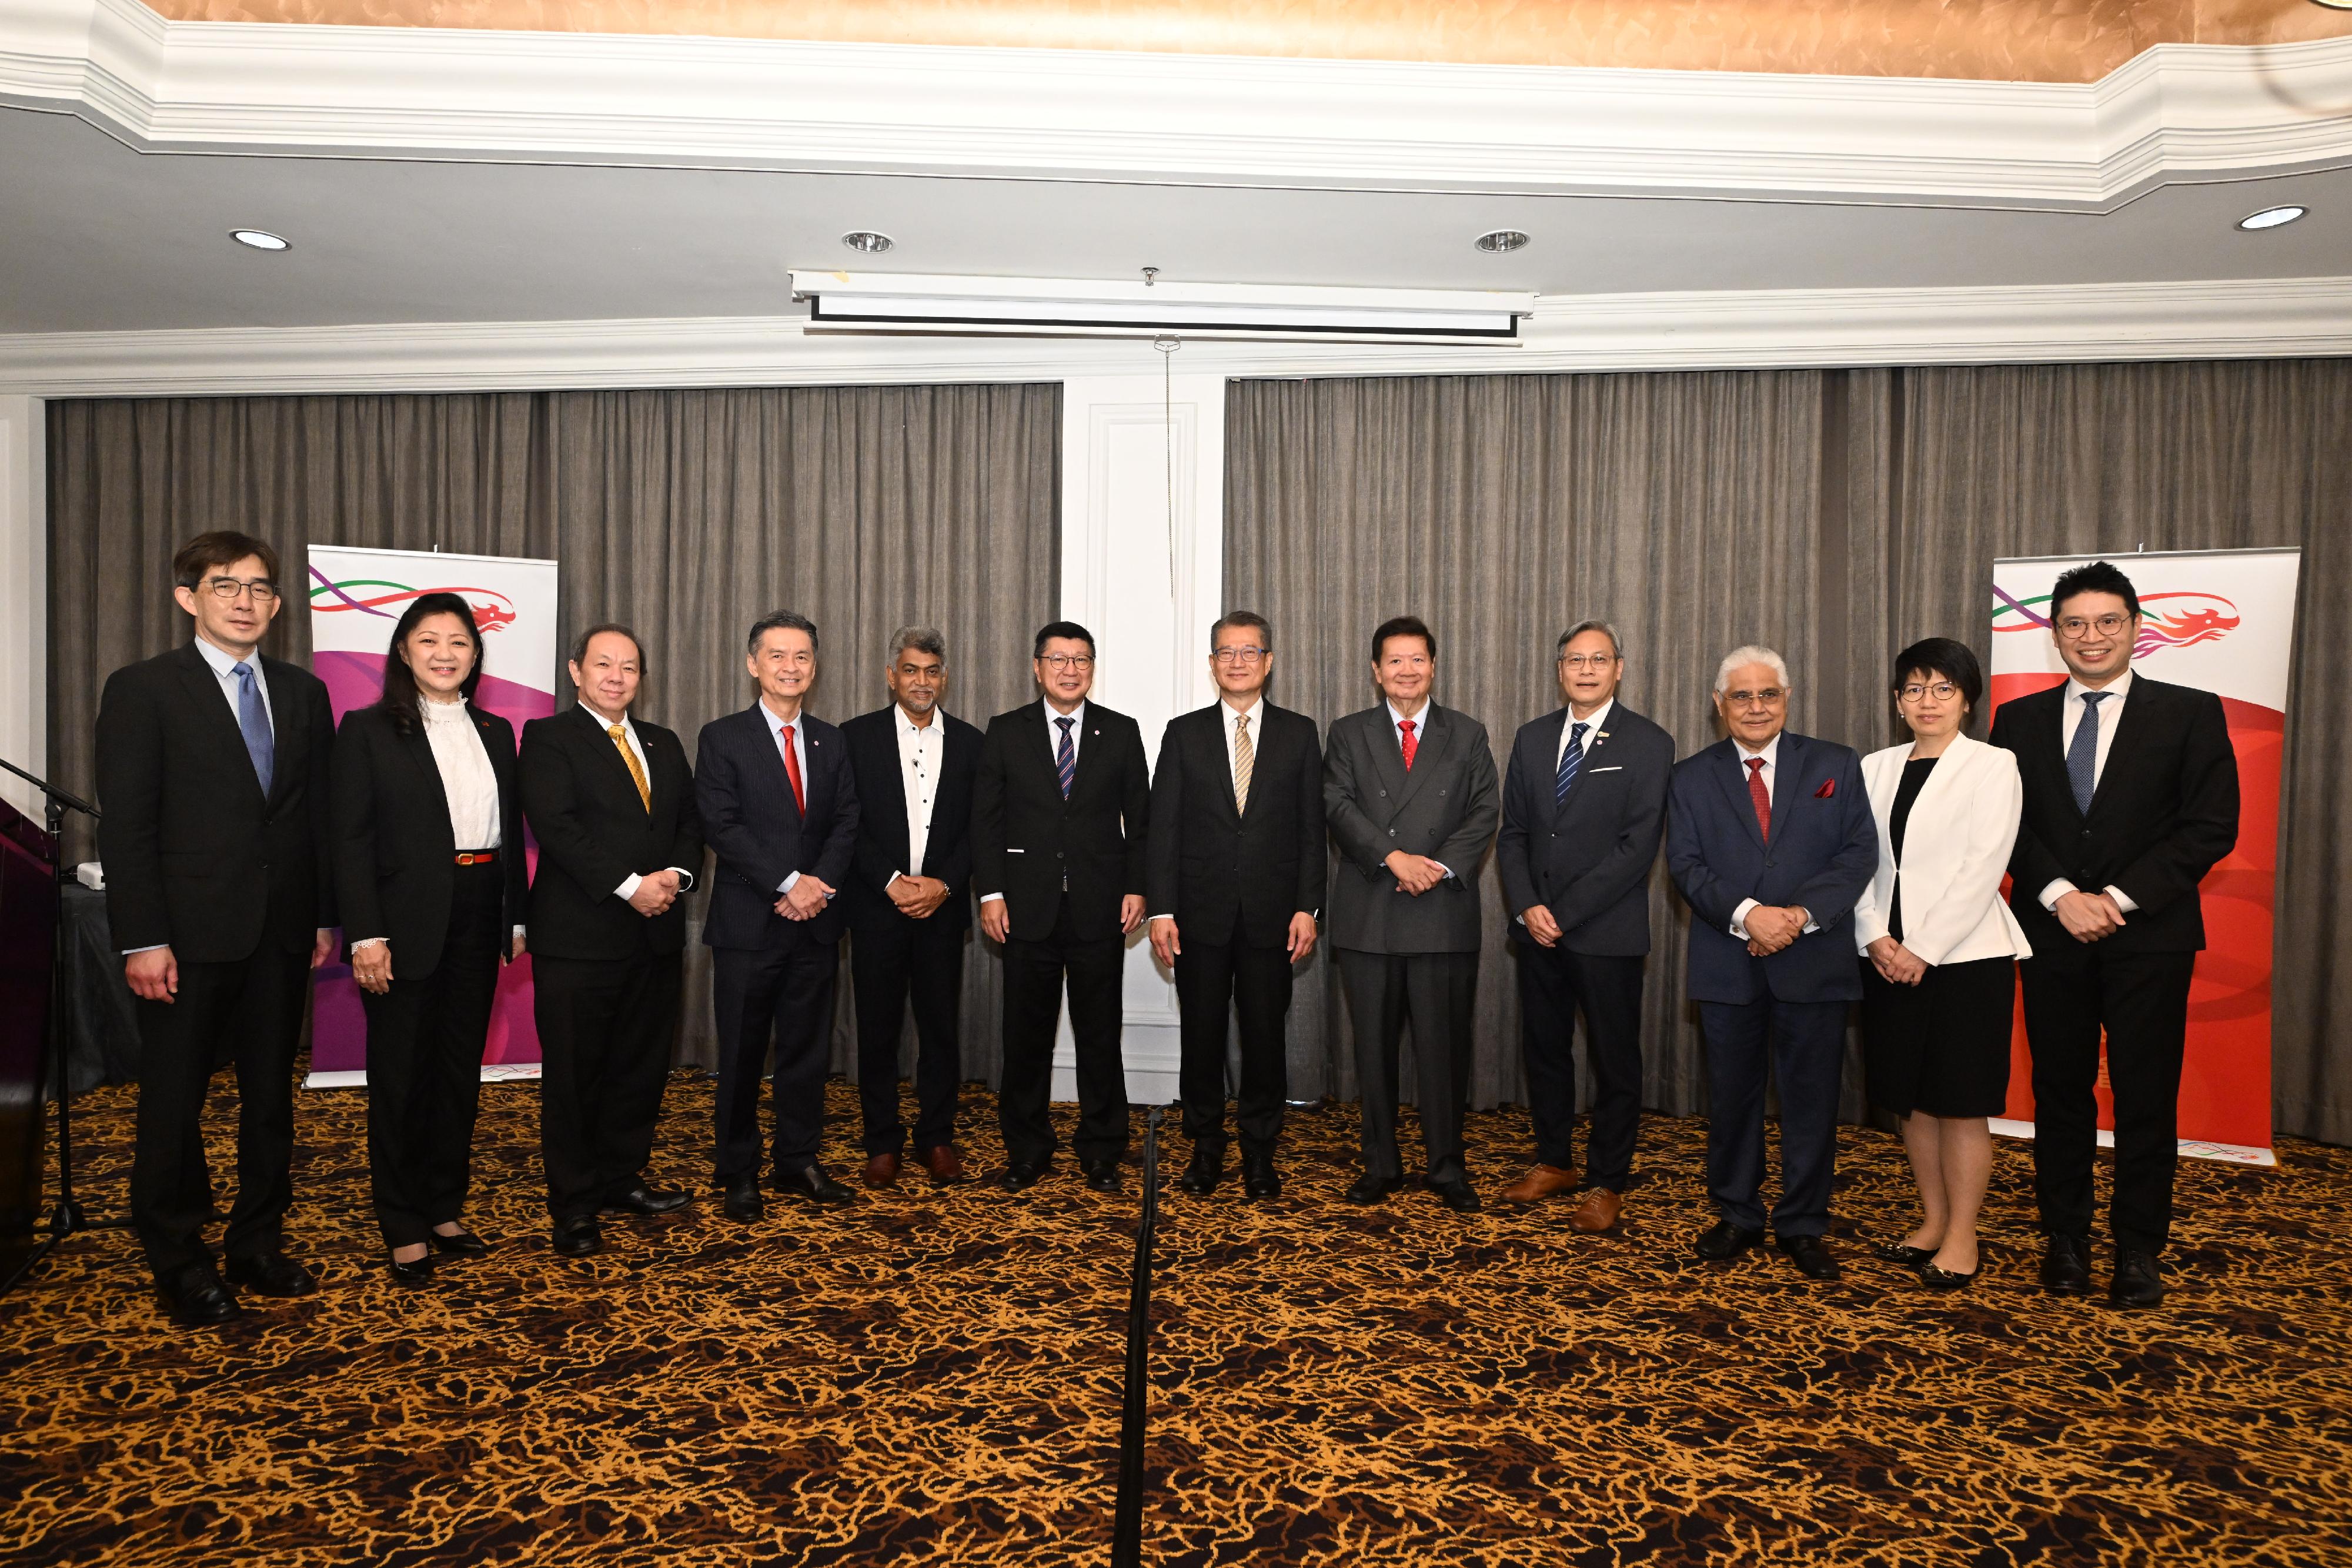 财政司司长陈茂波三月二十七日正式展开马来西亚的访问行程。图示陈茂波（右六）出席由香港驻雅加达经济贸易办事处和马来西亚全国总商会合办的午餐会并与商会主要人员合照。